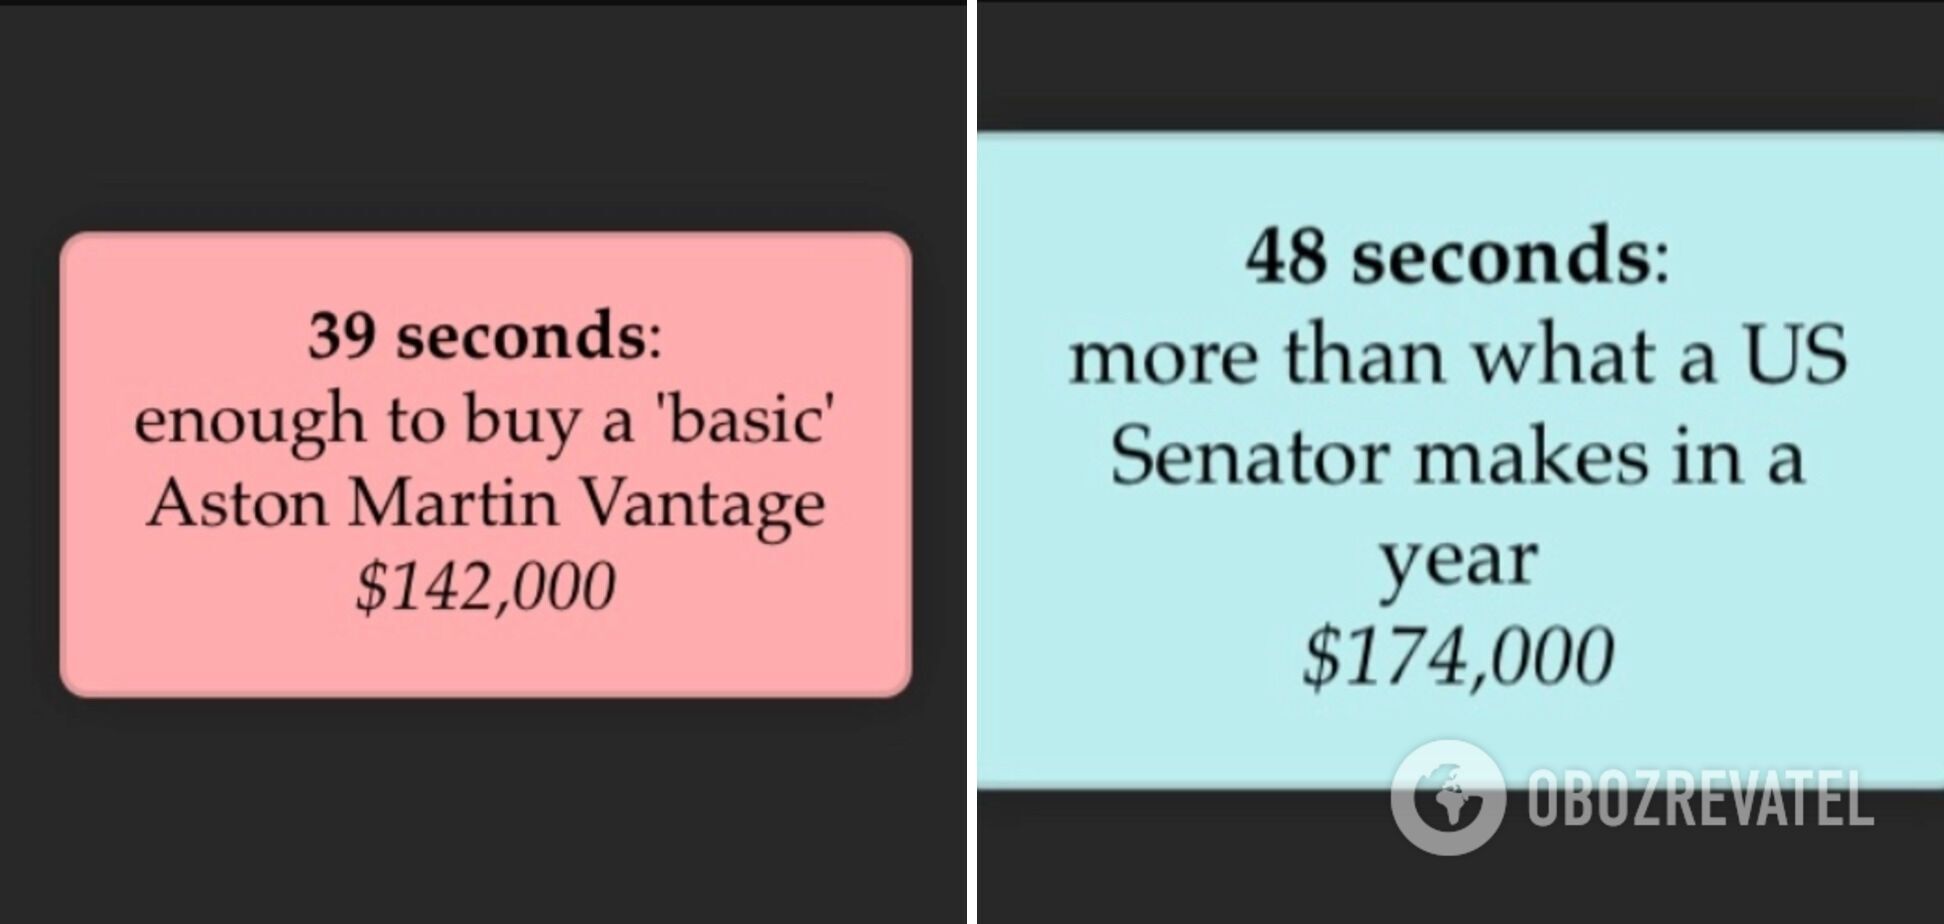 За 39 секунд дохід Безоса становить $142 000, а за 48 секунд – $174 000